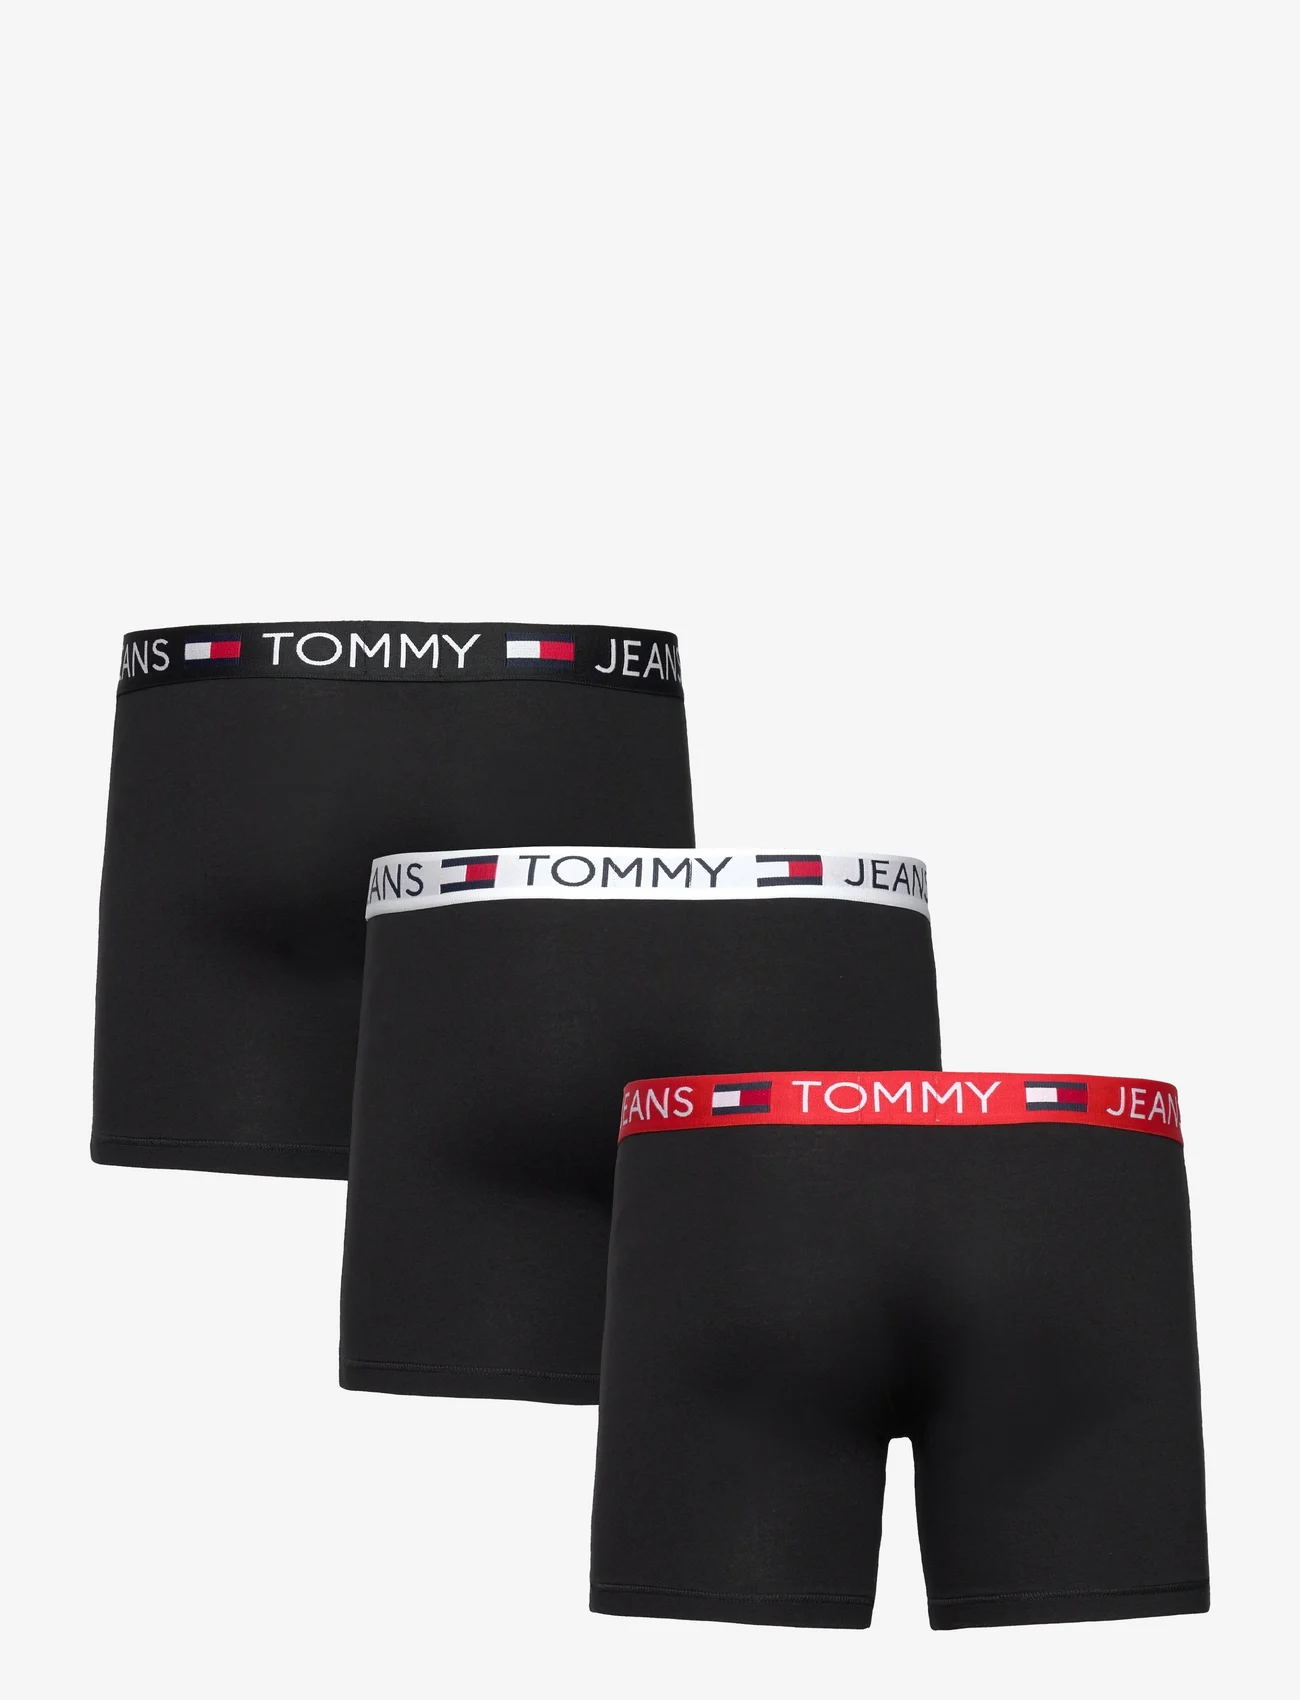 Tommy Hilfiger - 3P BOXER BRIEF - boxerkalsonger - black/black/black - 1